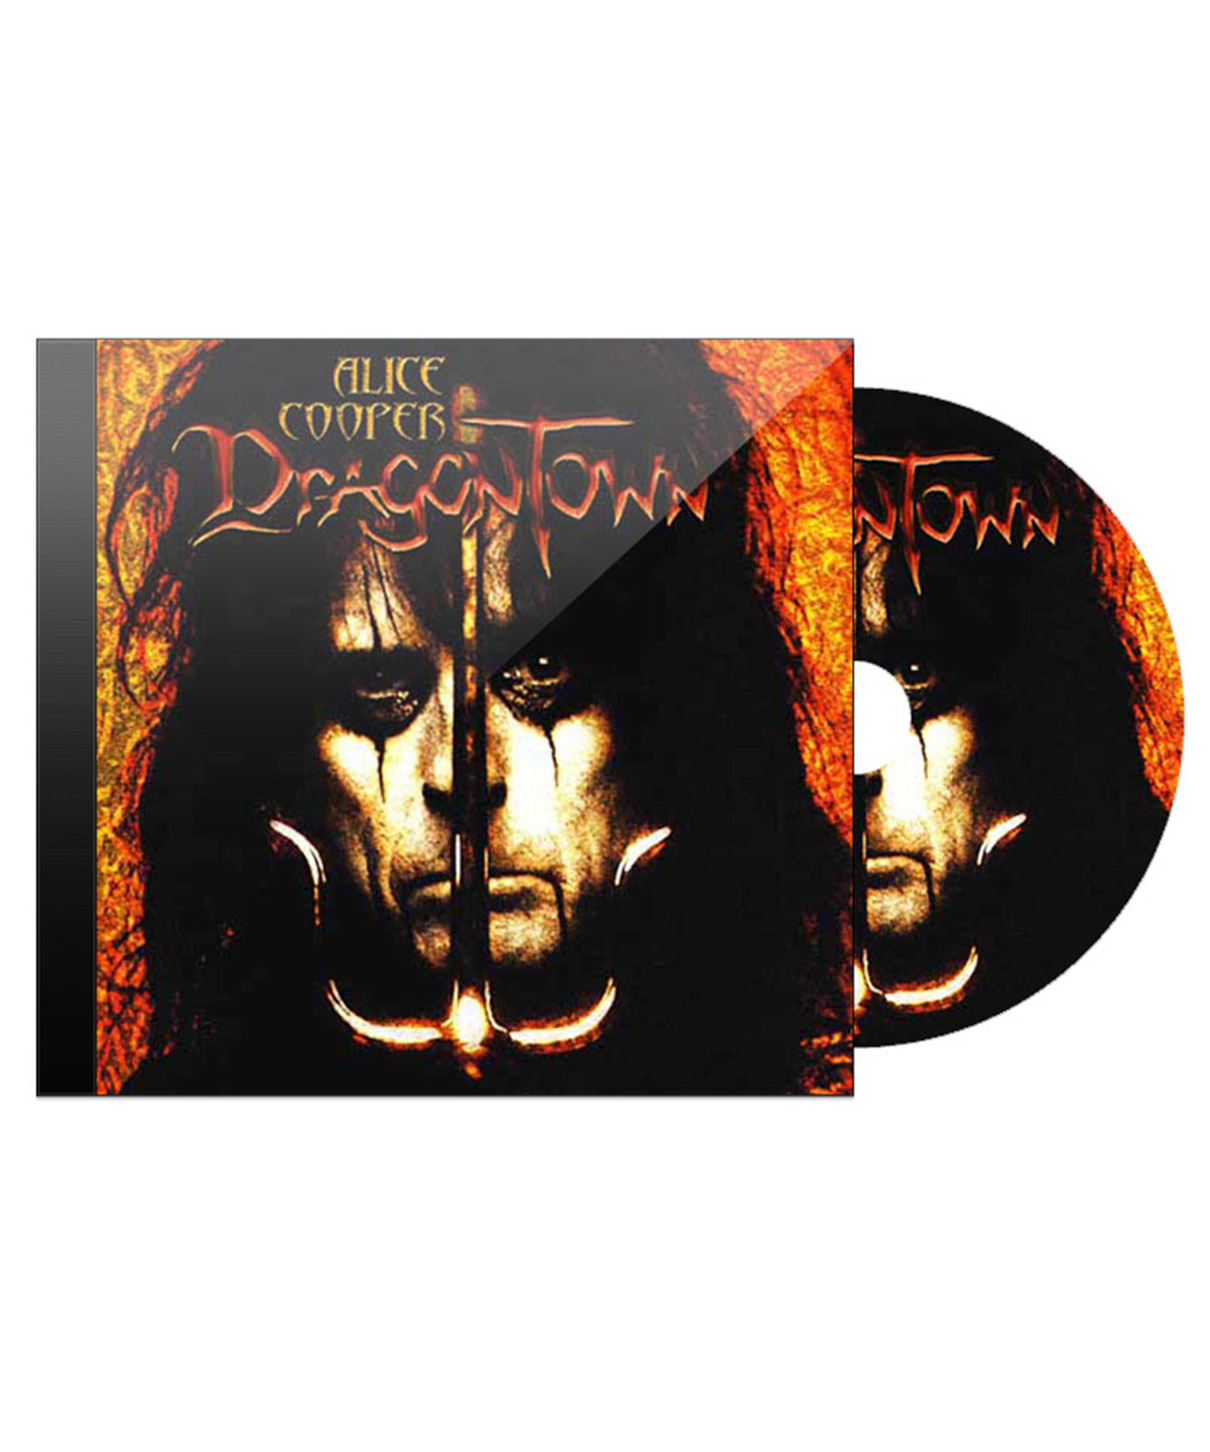 CD Диск Alice Cooper Dragontown - фото 1 - rockbunker.ru